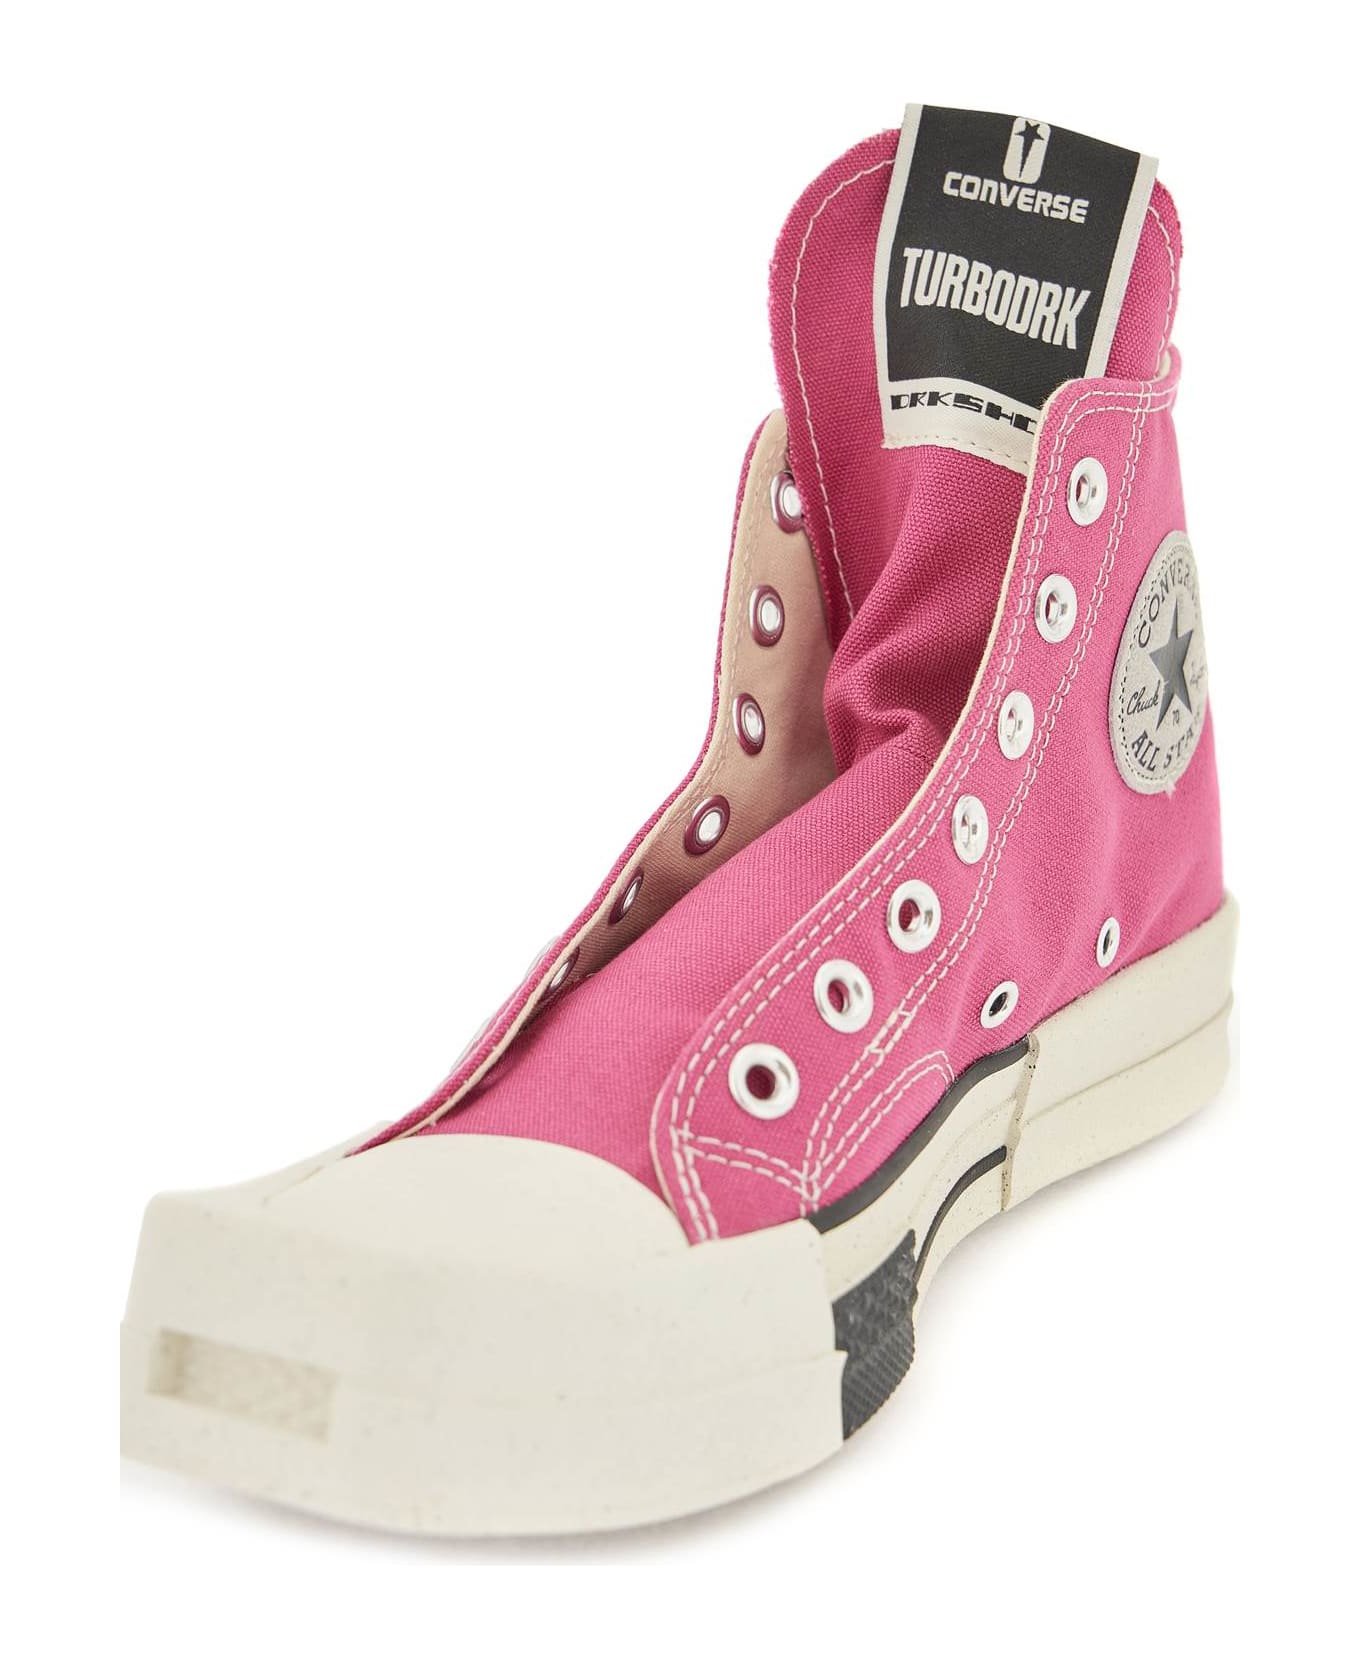 DRKSHDW Turbodrk Laceless Sneakers - Pink